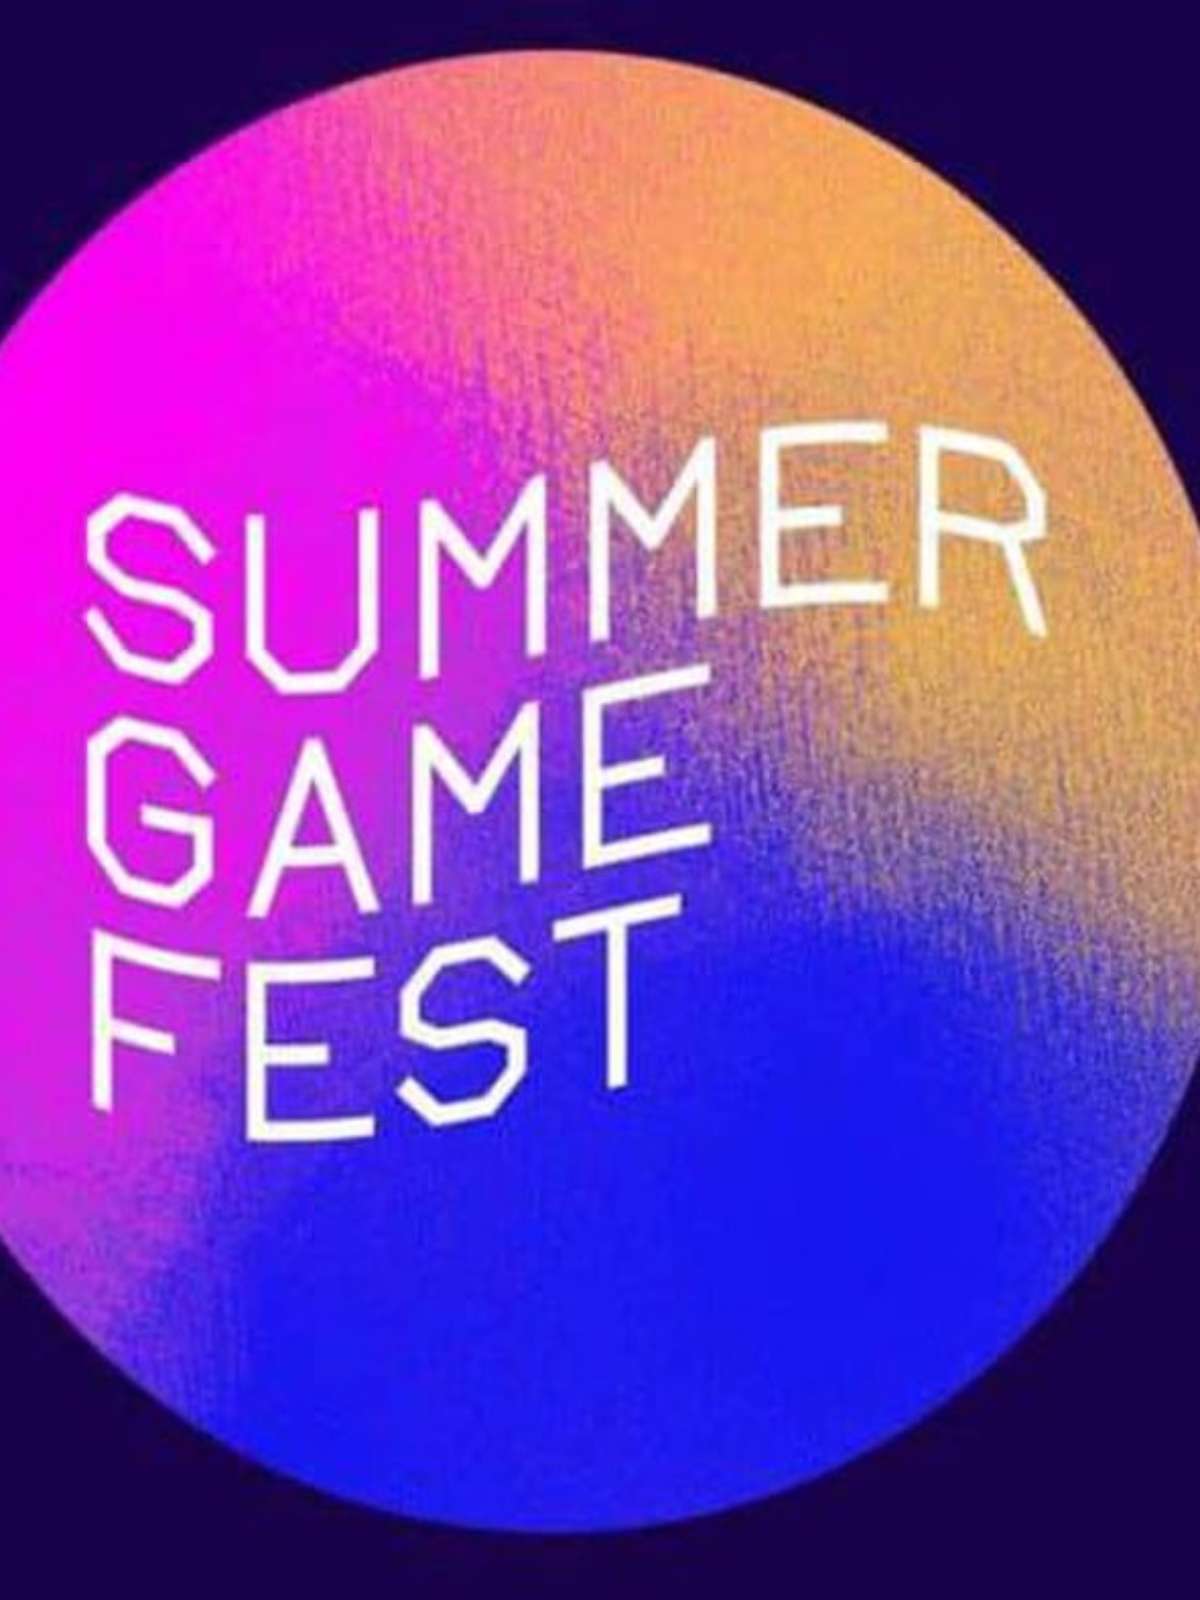 Summer Game Fest 2022: como assistir ao vivo e o que esperar